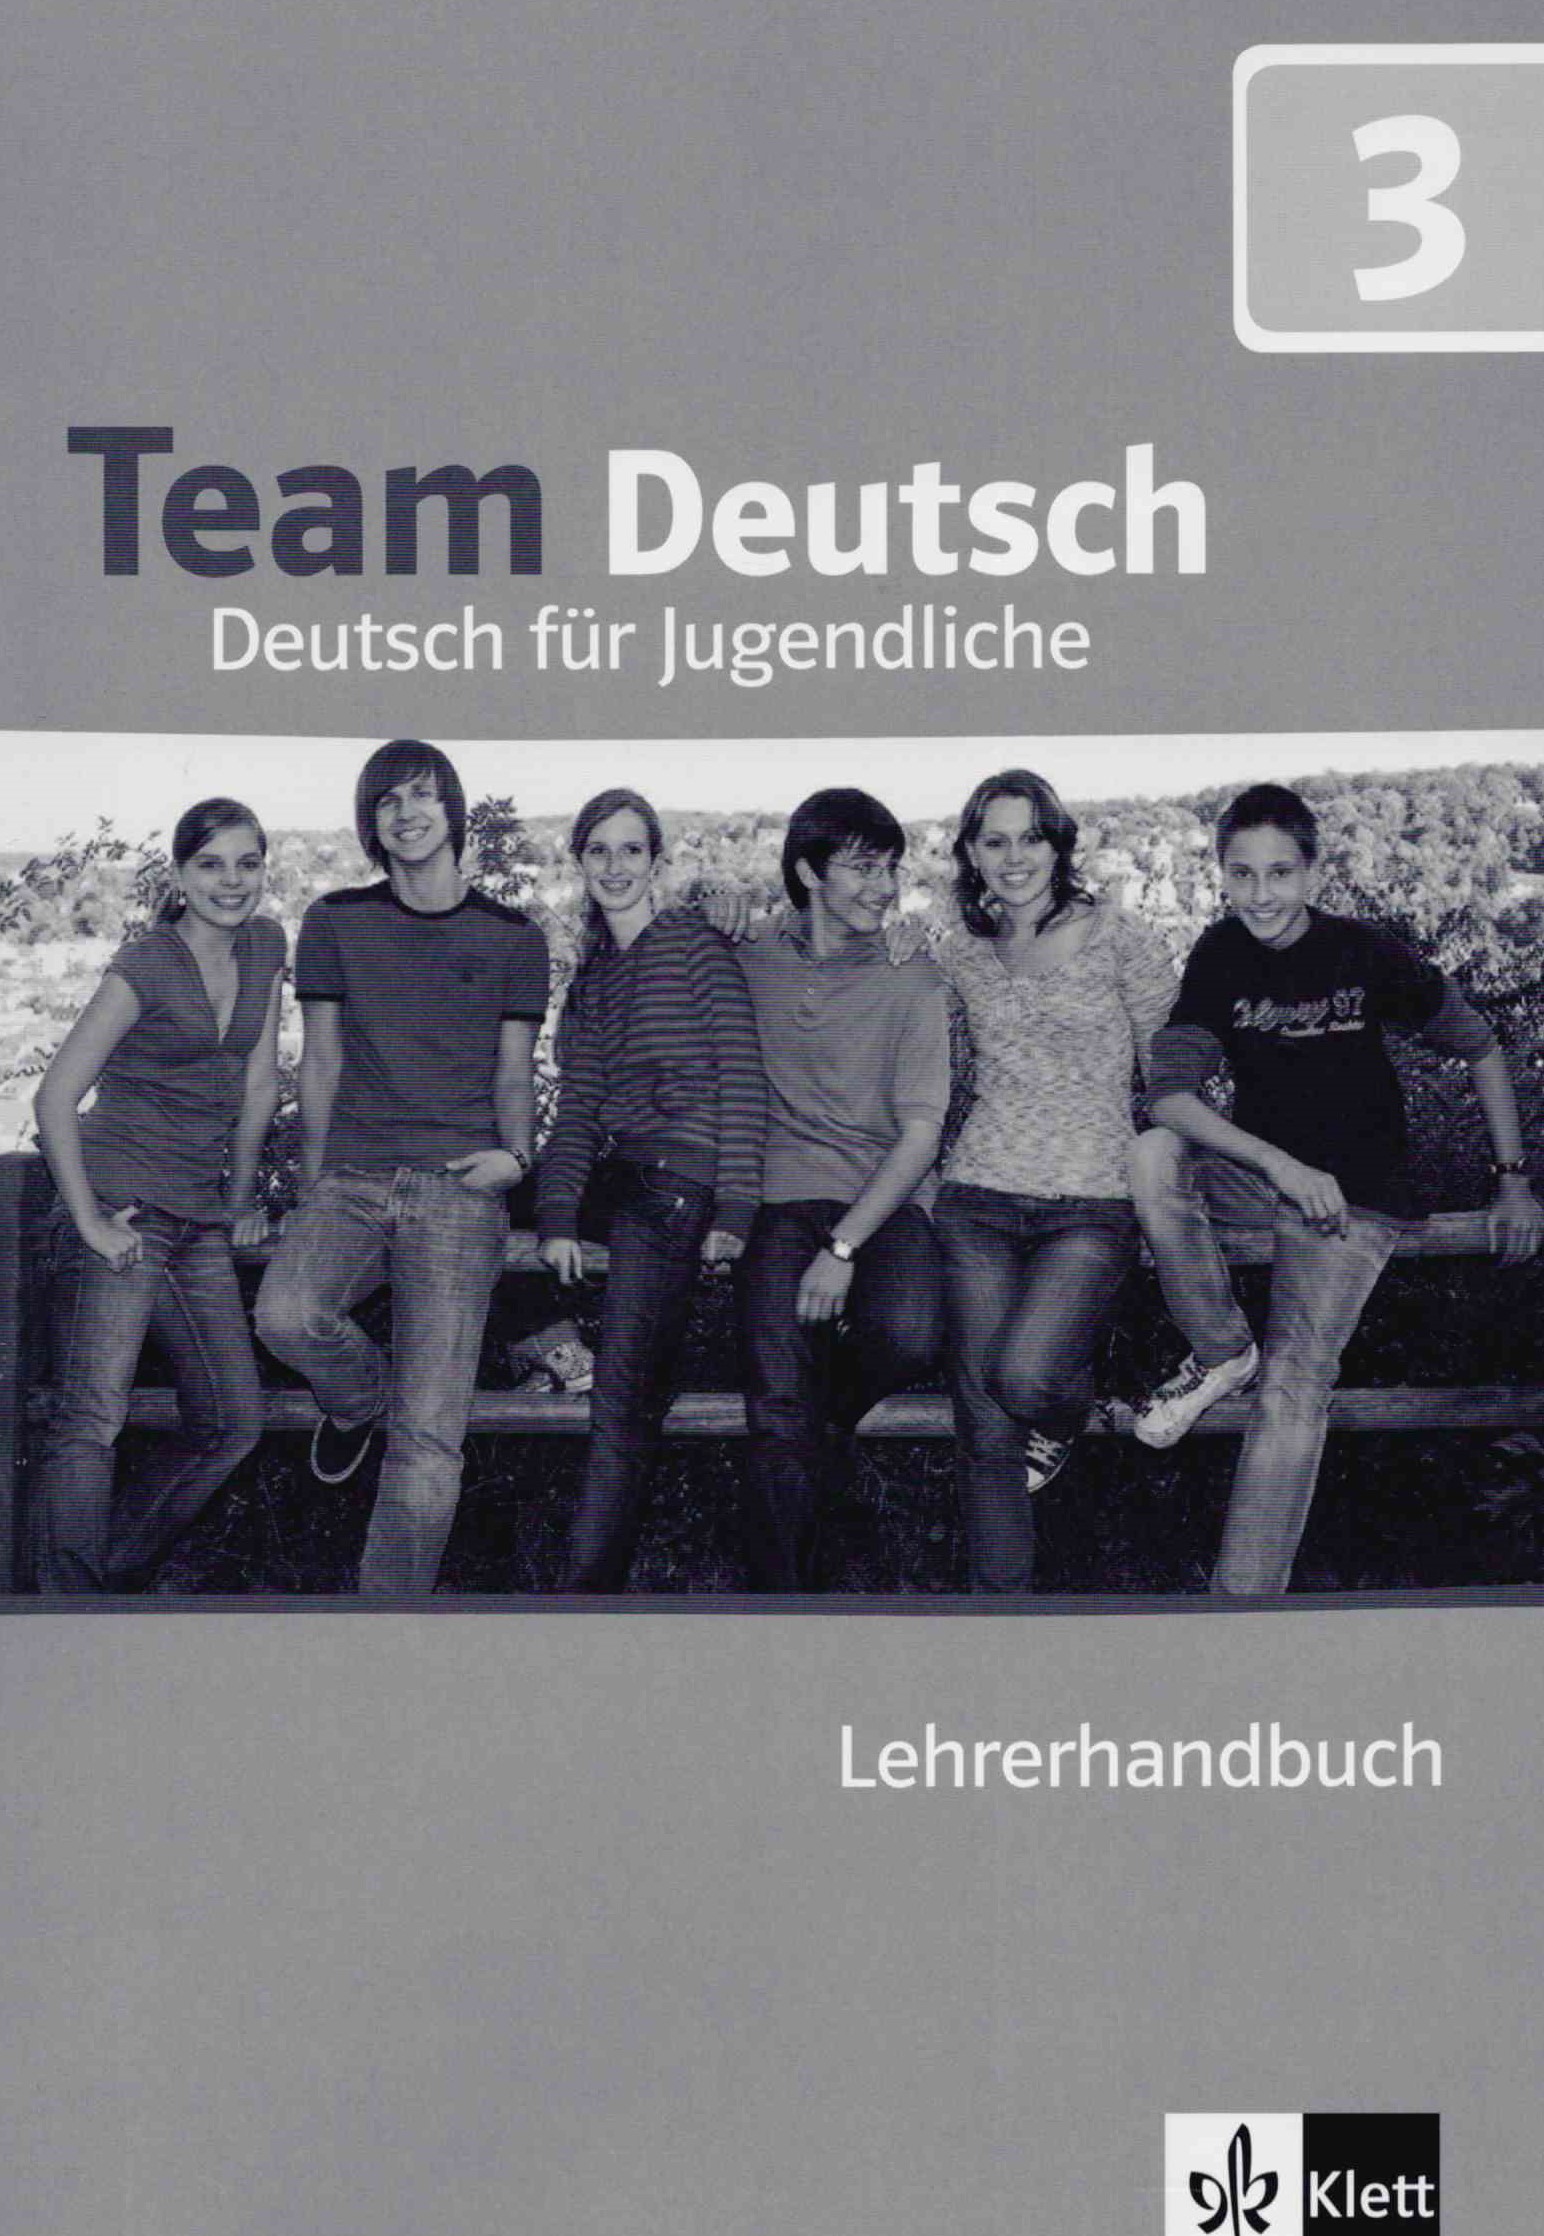 Team Deutsch 3 Lehrerhandbuch / Книга для учителя